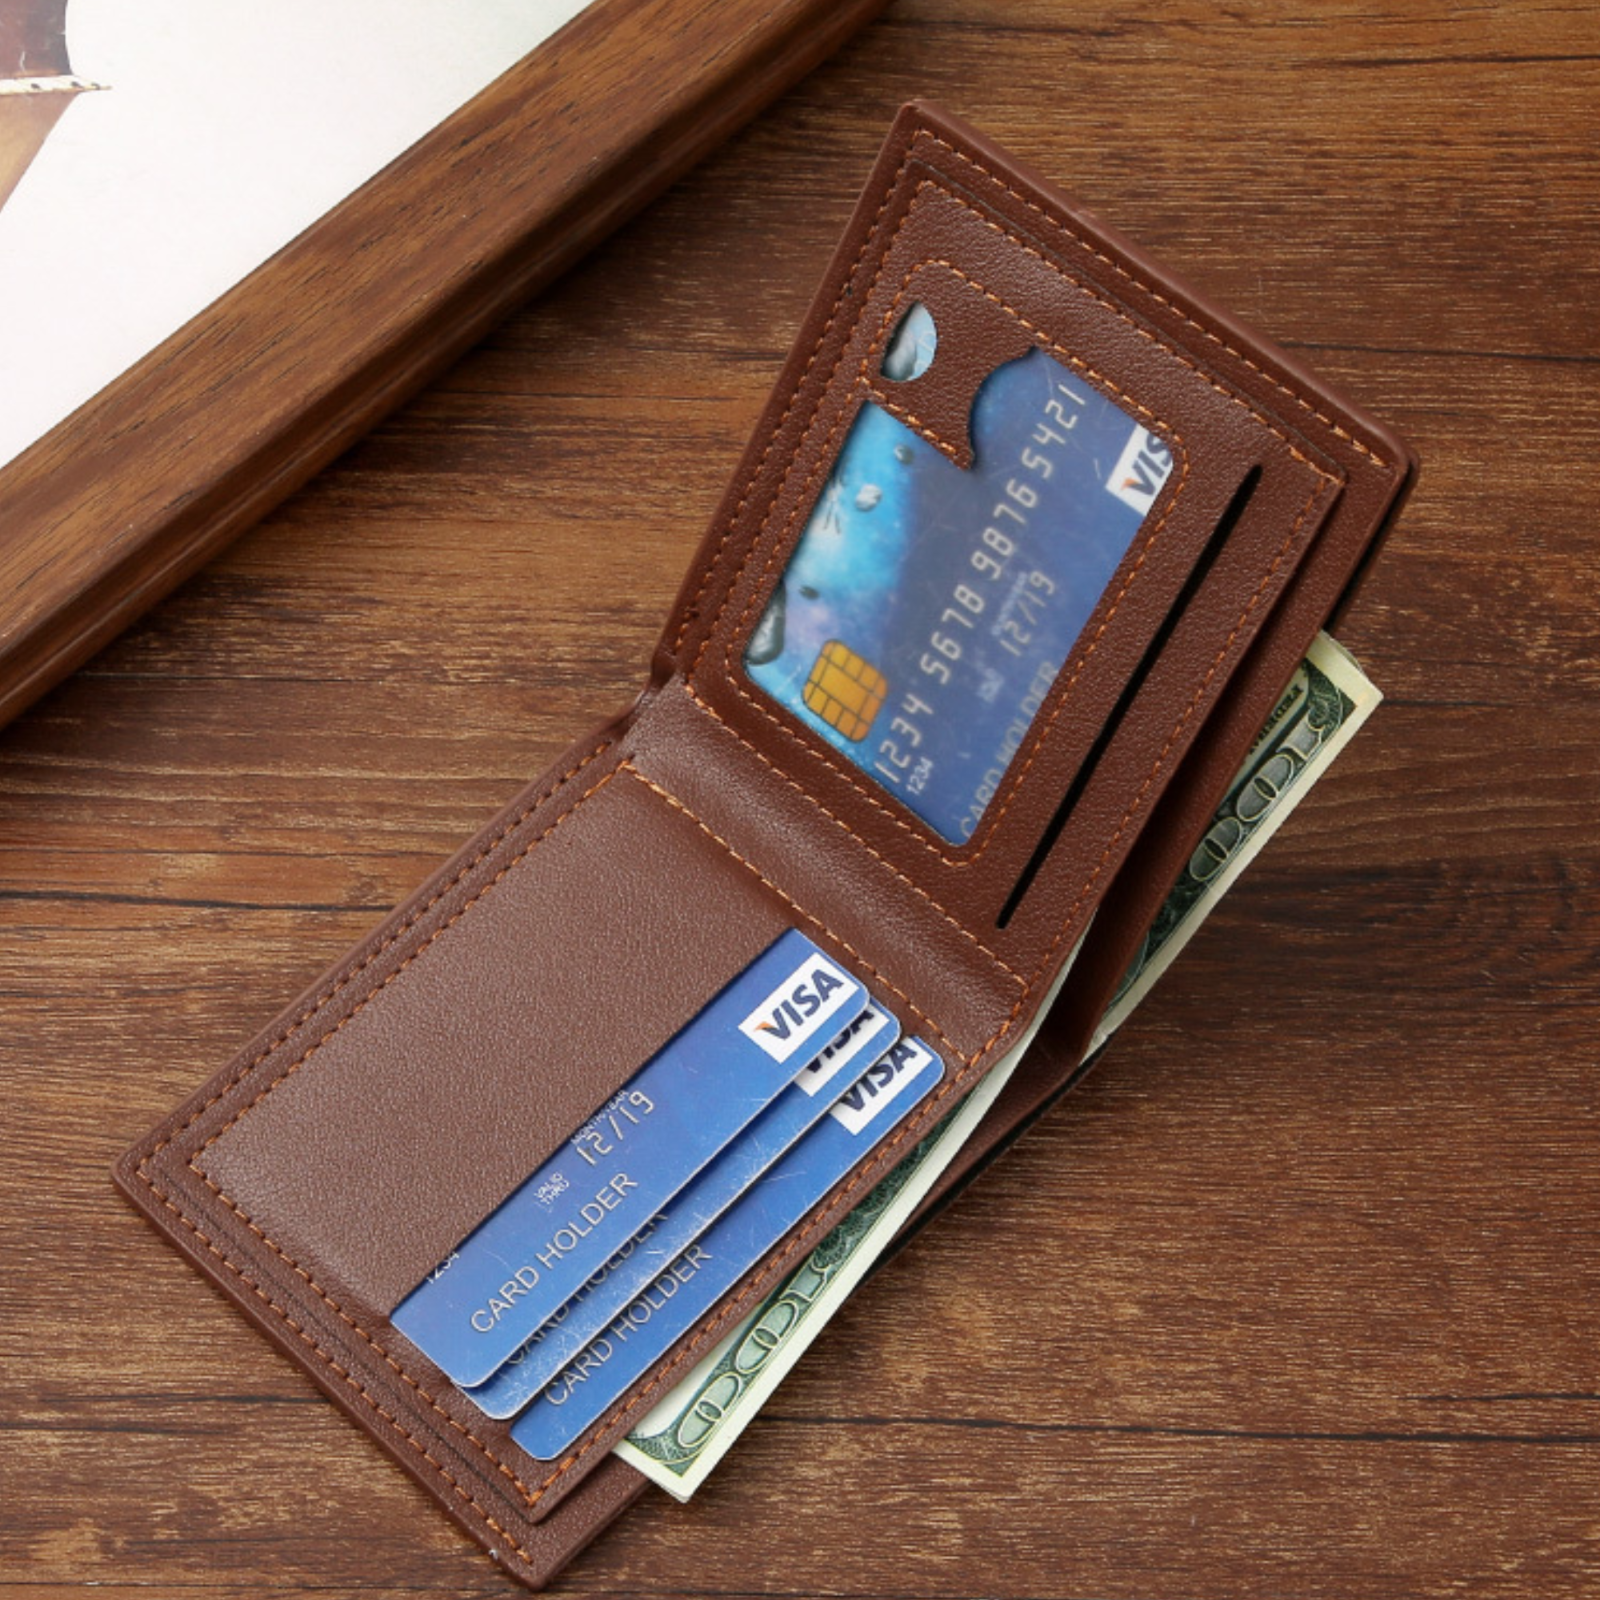 レザー製 折り畳み財布 薄型  PUレザー財布  折り畳み財布  薄型財布  メンズ財布  レディース財布  シンプルデザイン  高級感